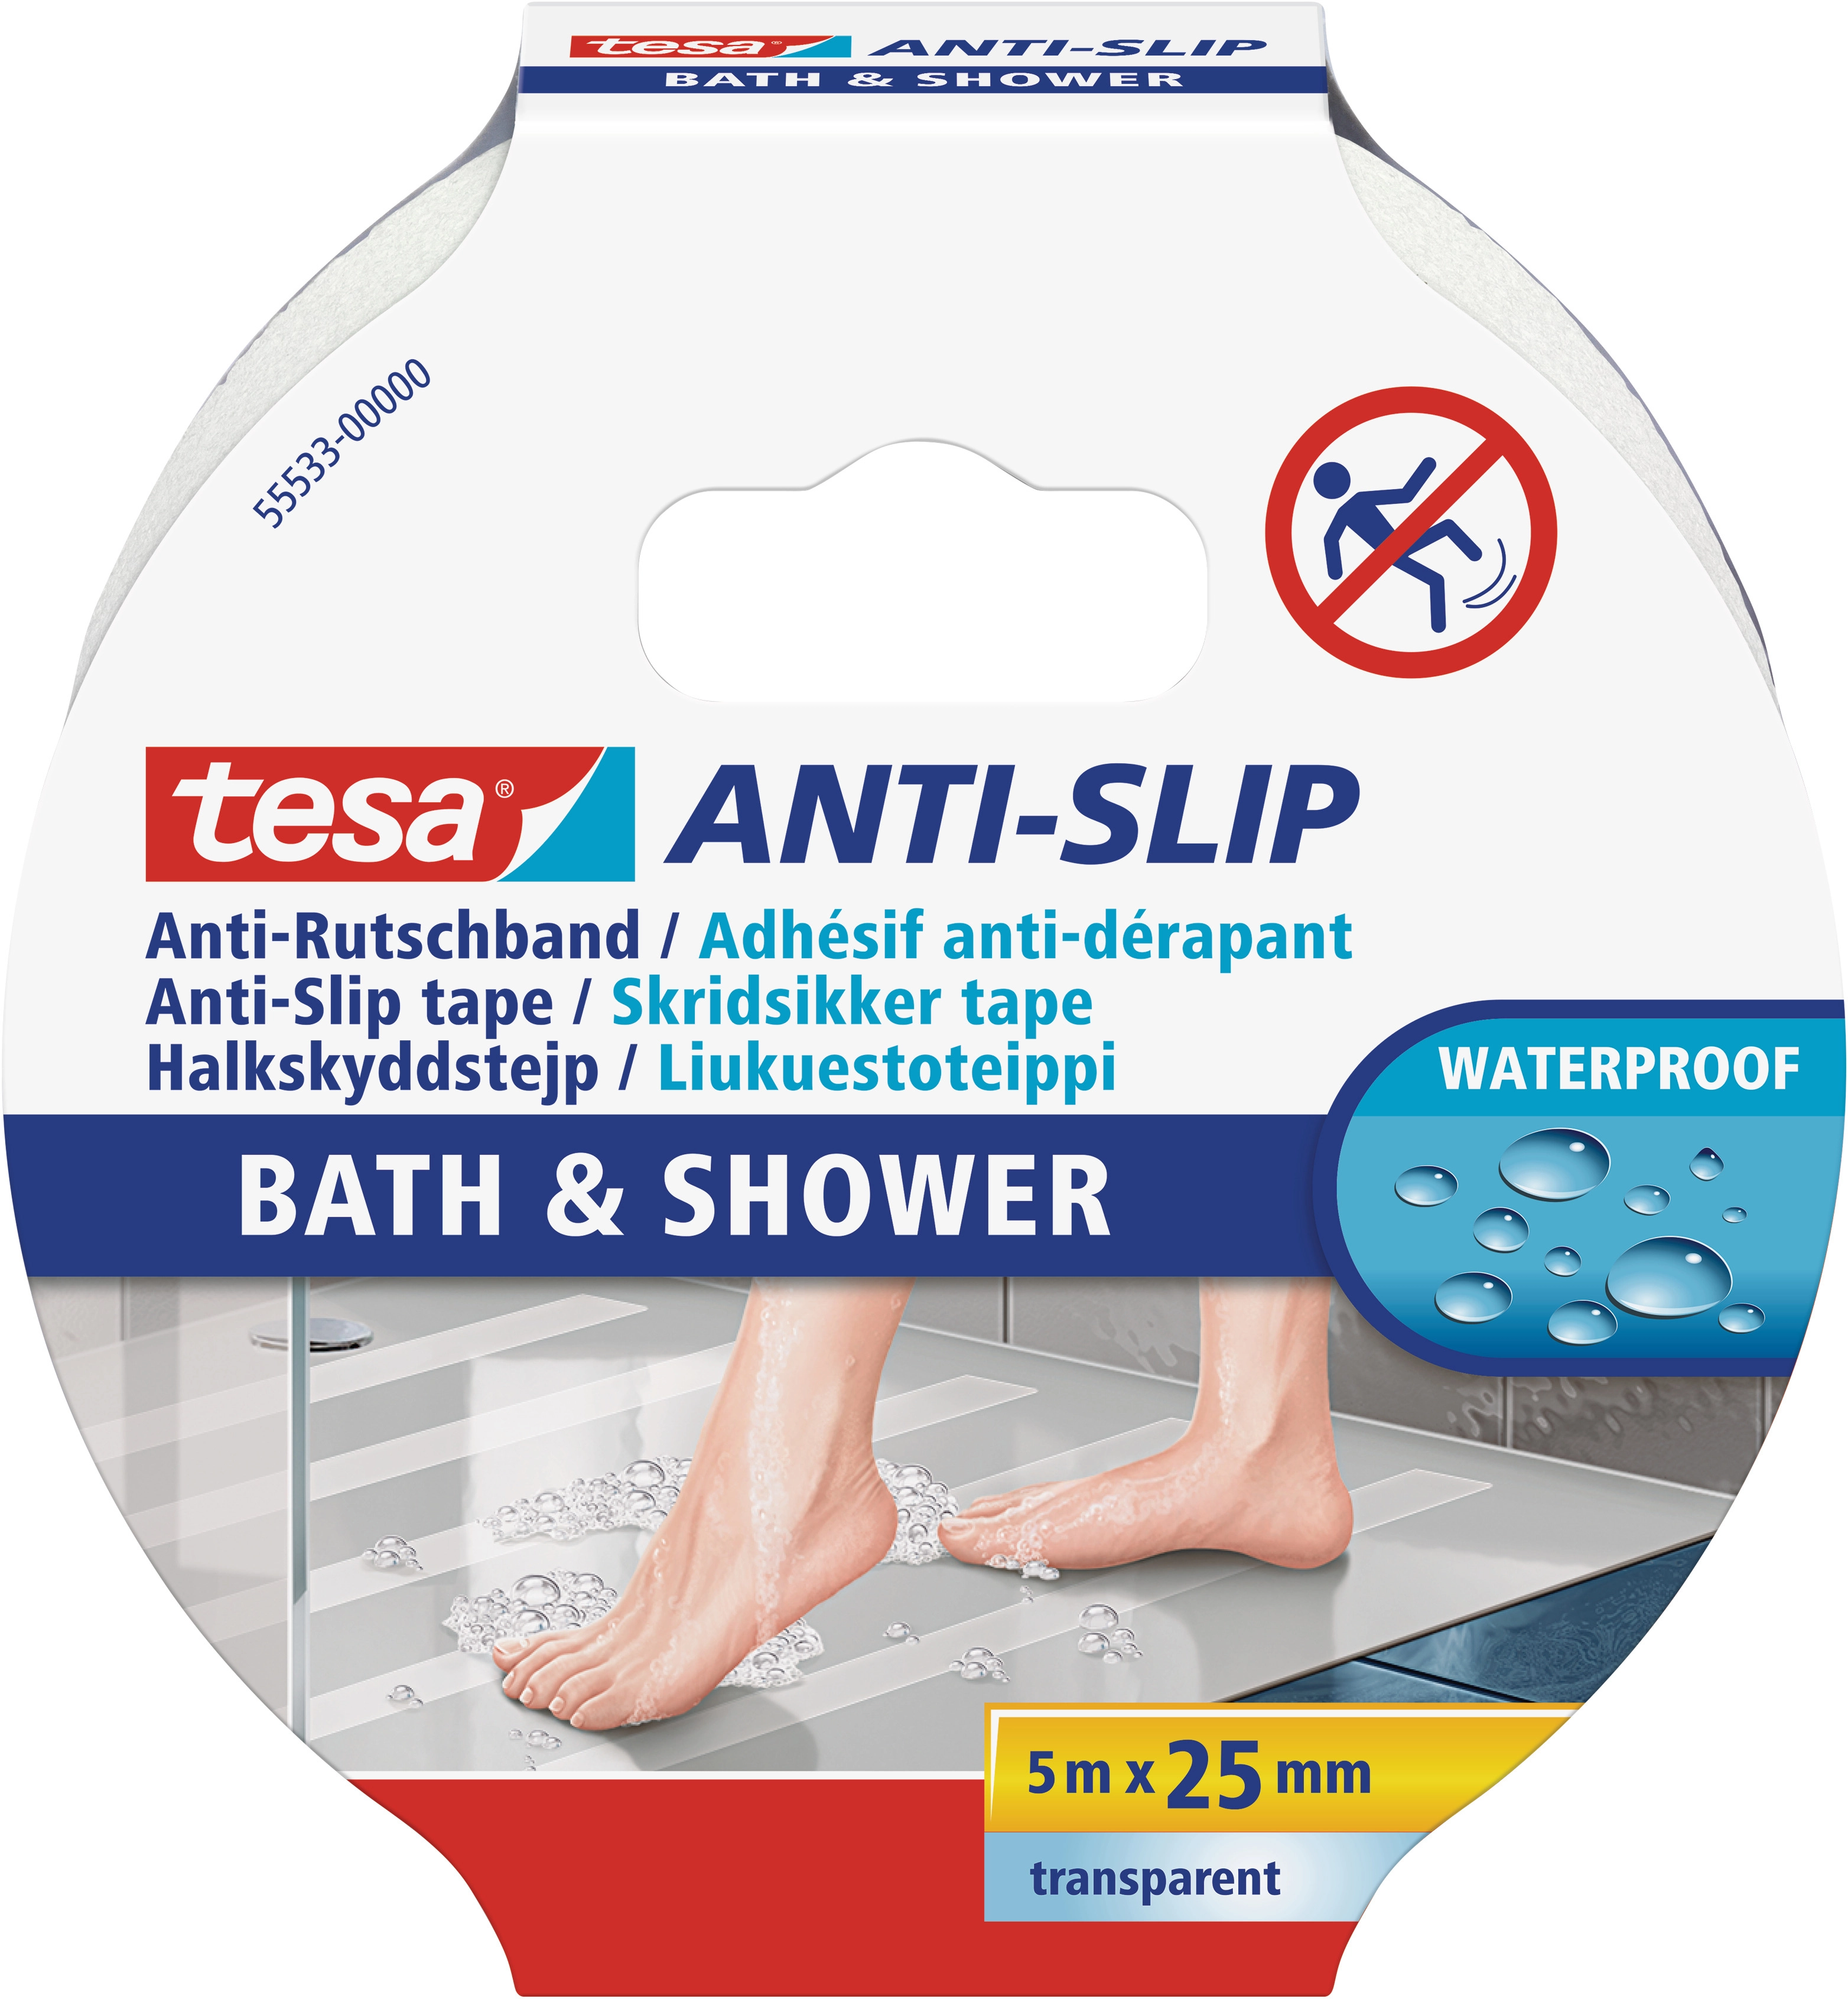 Tesa Anti-Rutschband Bad und Dusche Transparent 5 m x 25 mm kaufen